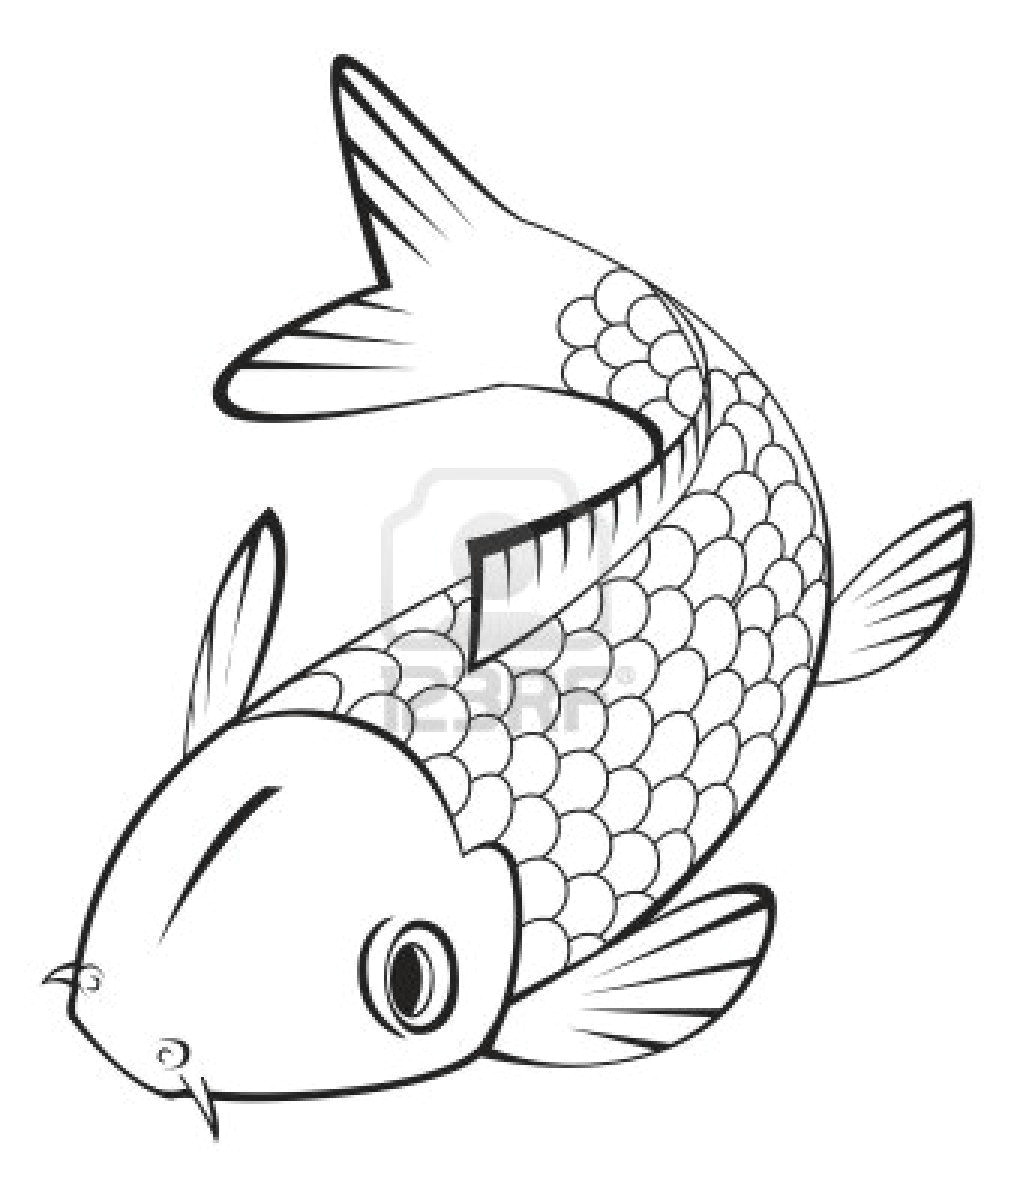 Easy Drawings Of Koi Fish Download Koi Fish Coloring Pages Koi Fish Drawing Fish